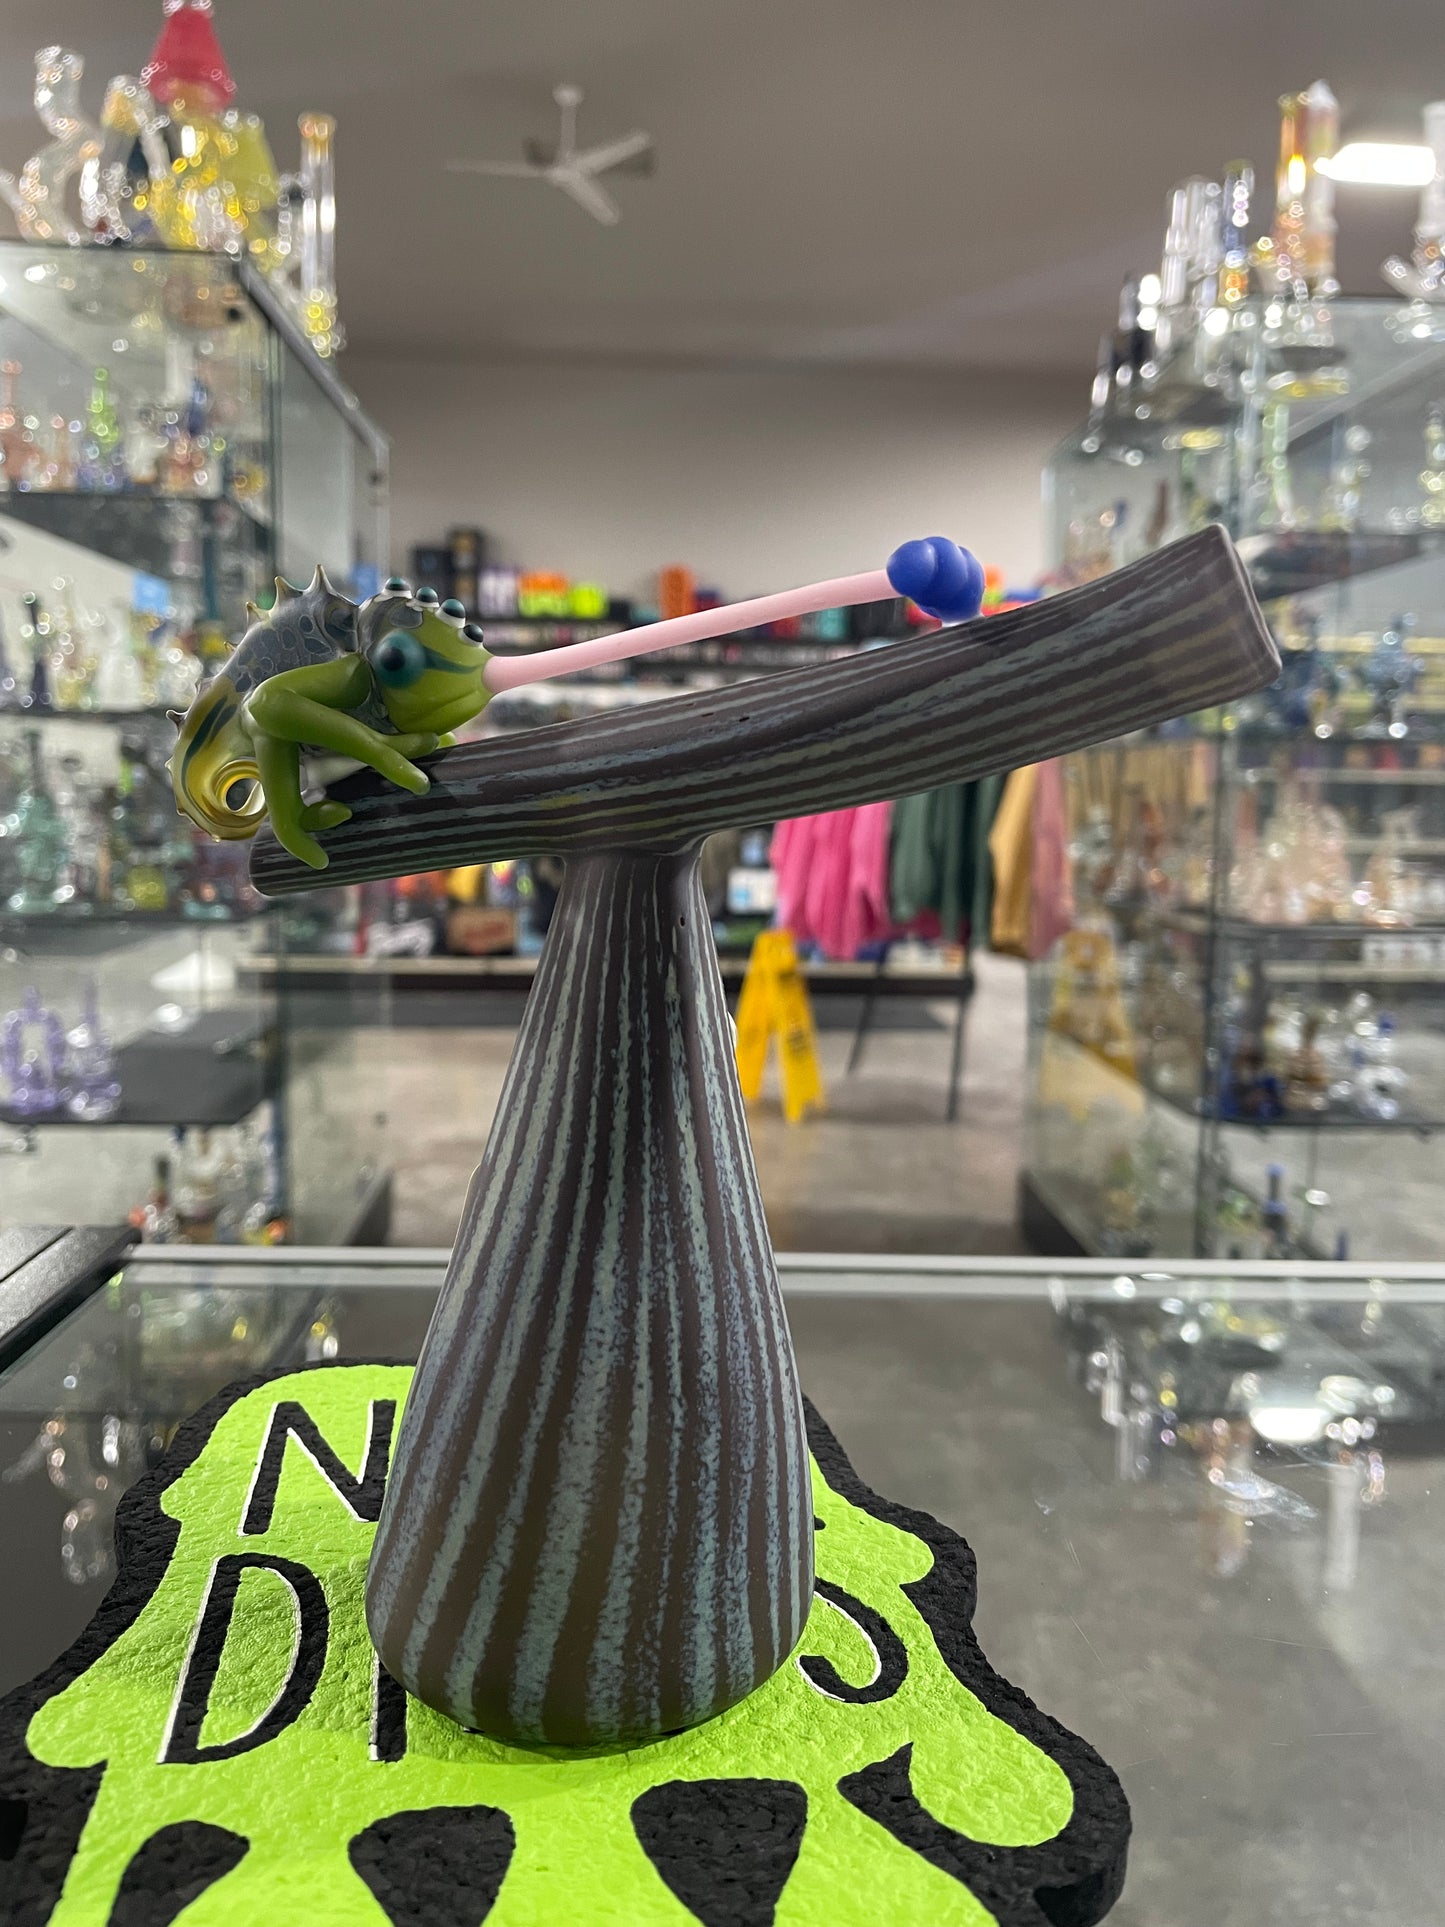 Hardman Art Glass Chameleon